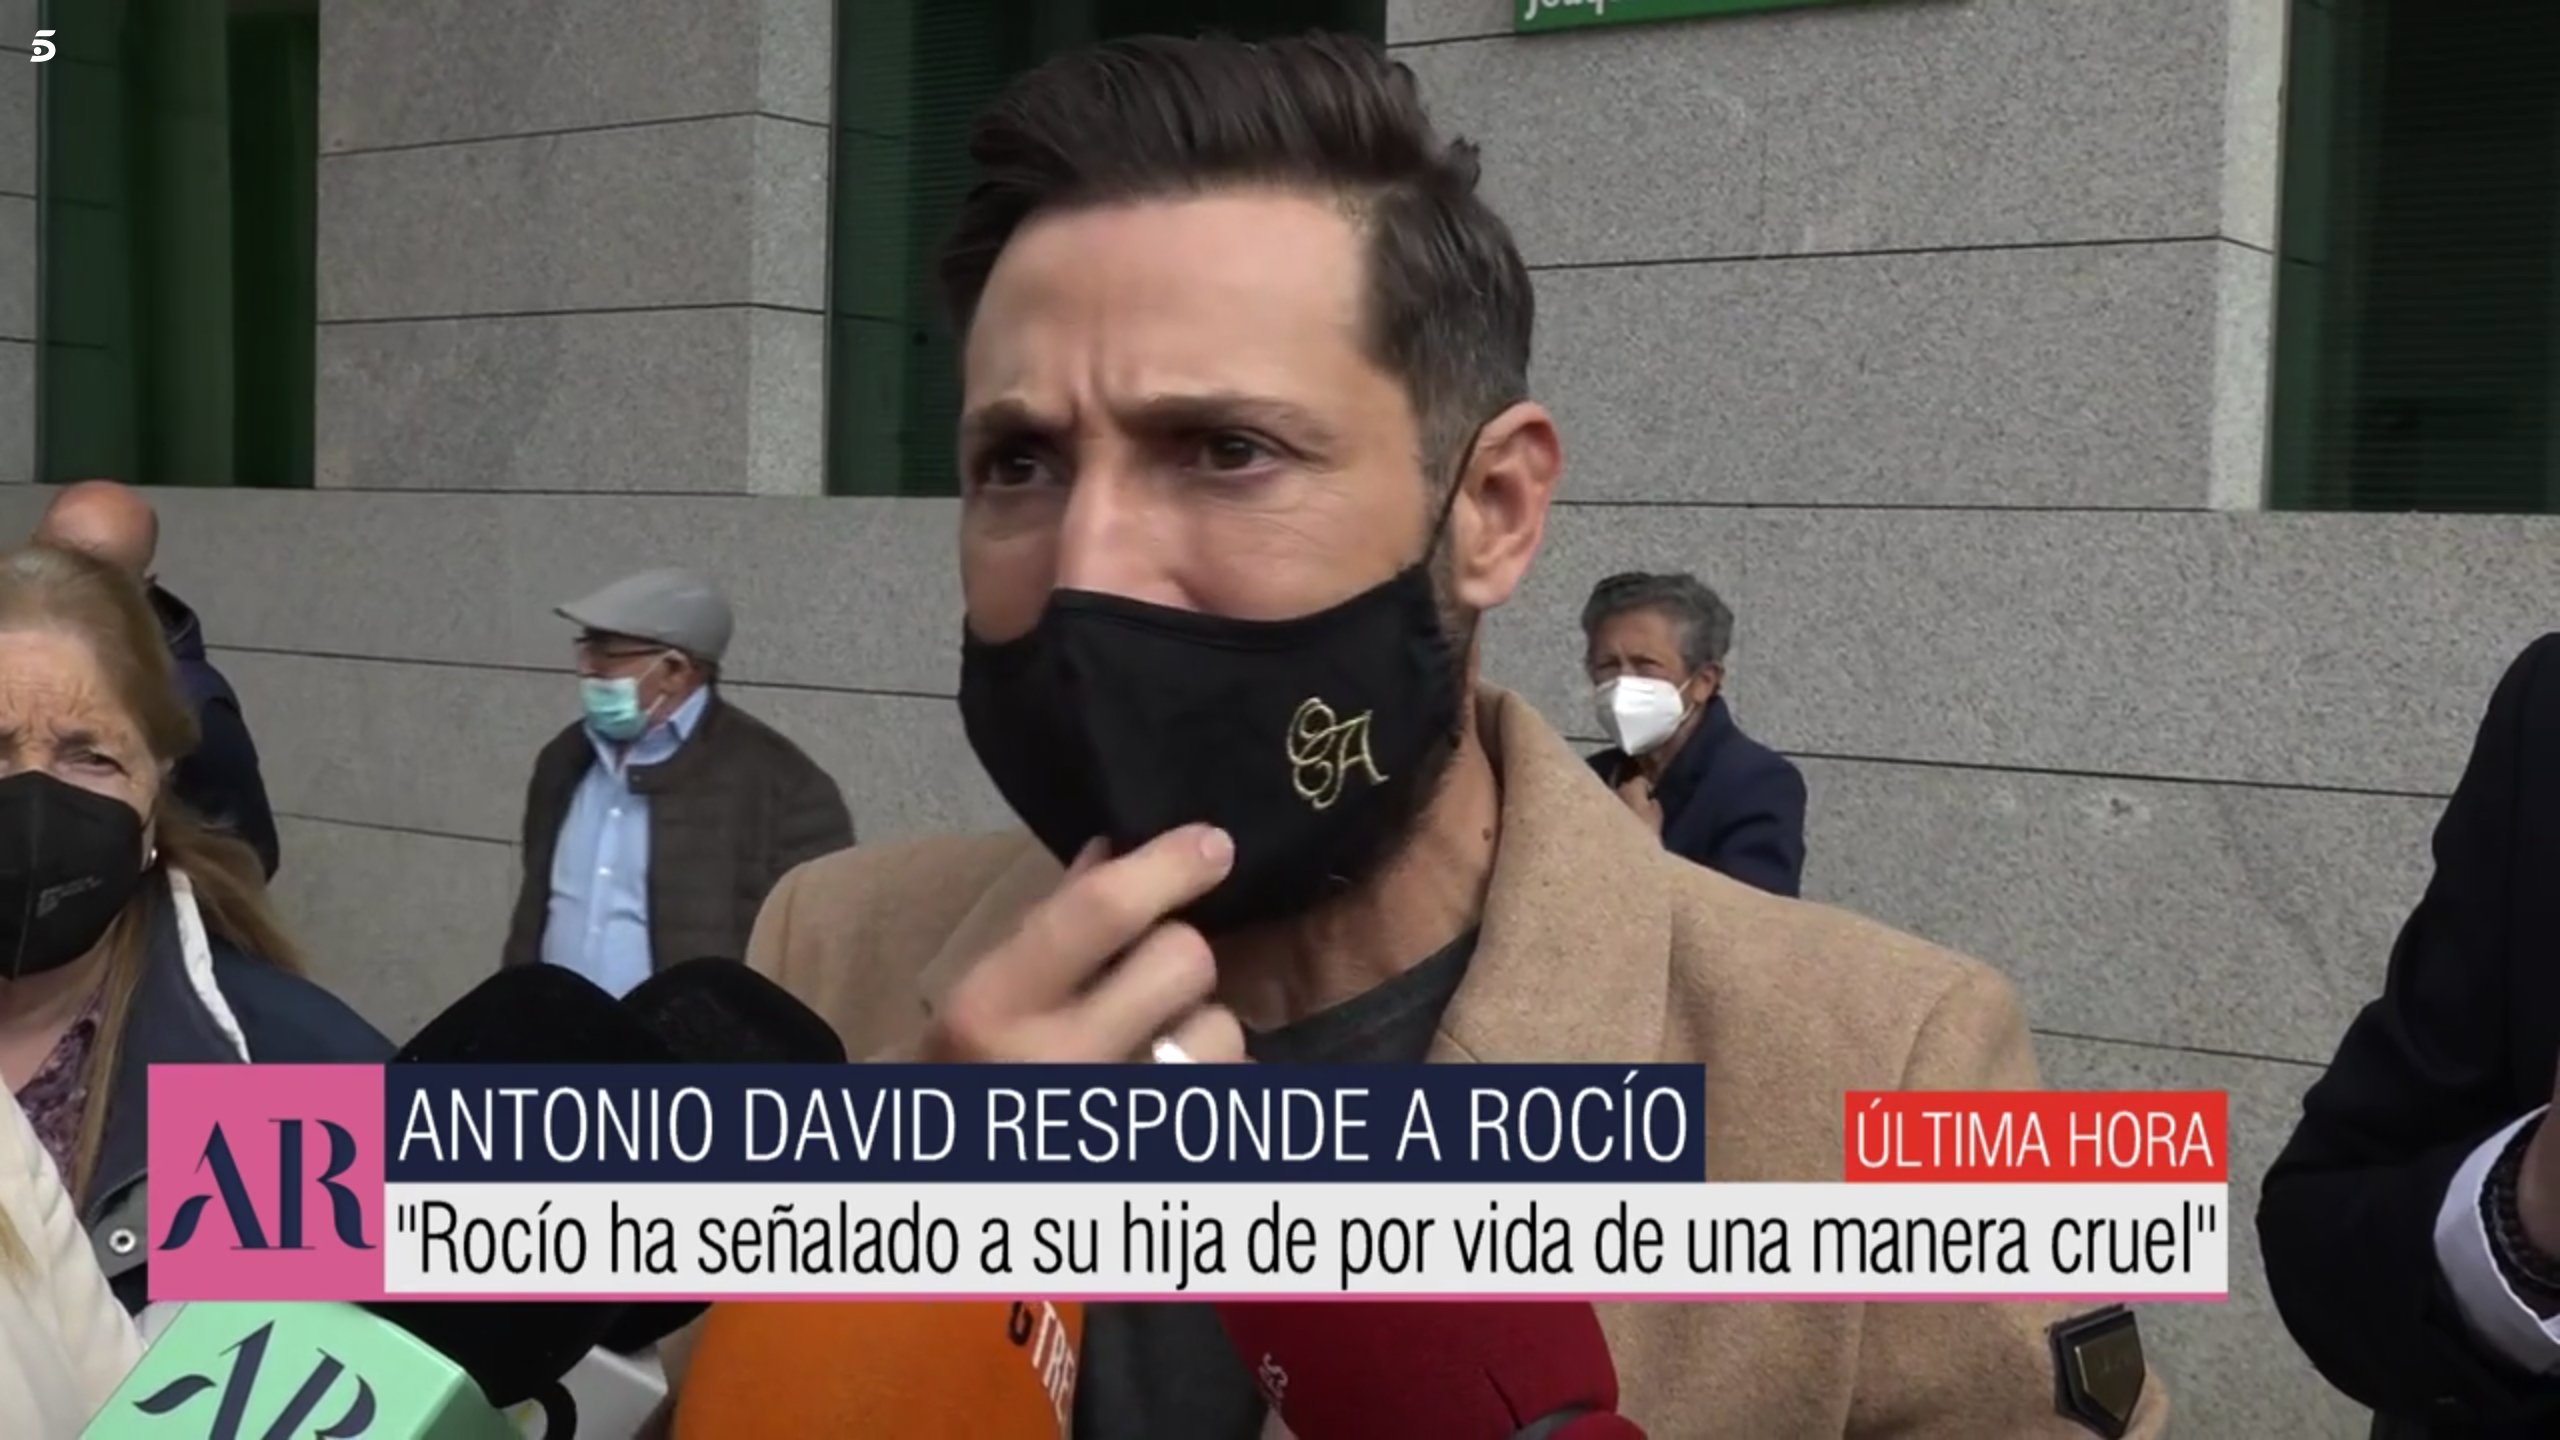 Antonio David acusa a Rociíto de cruel con su hija y amenaza: "tengo material"